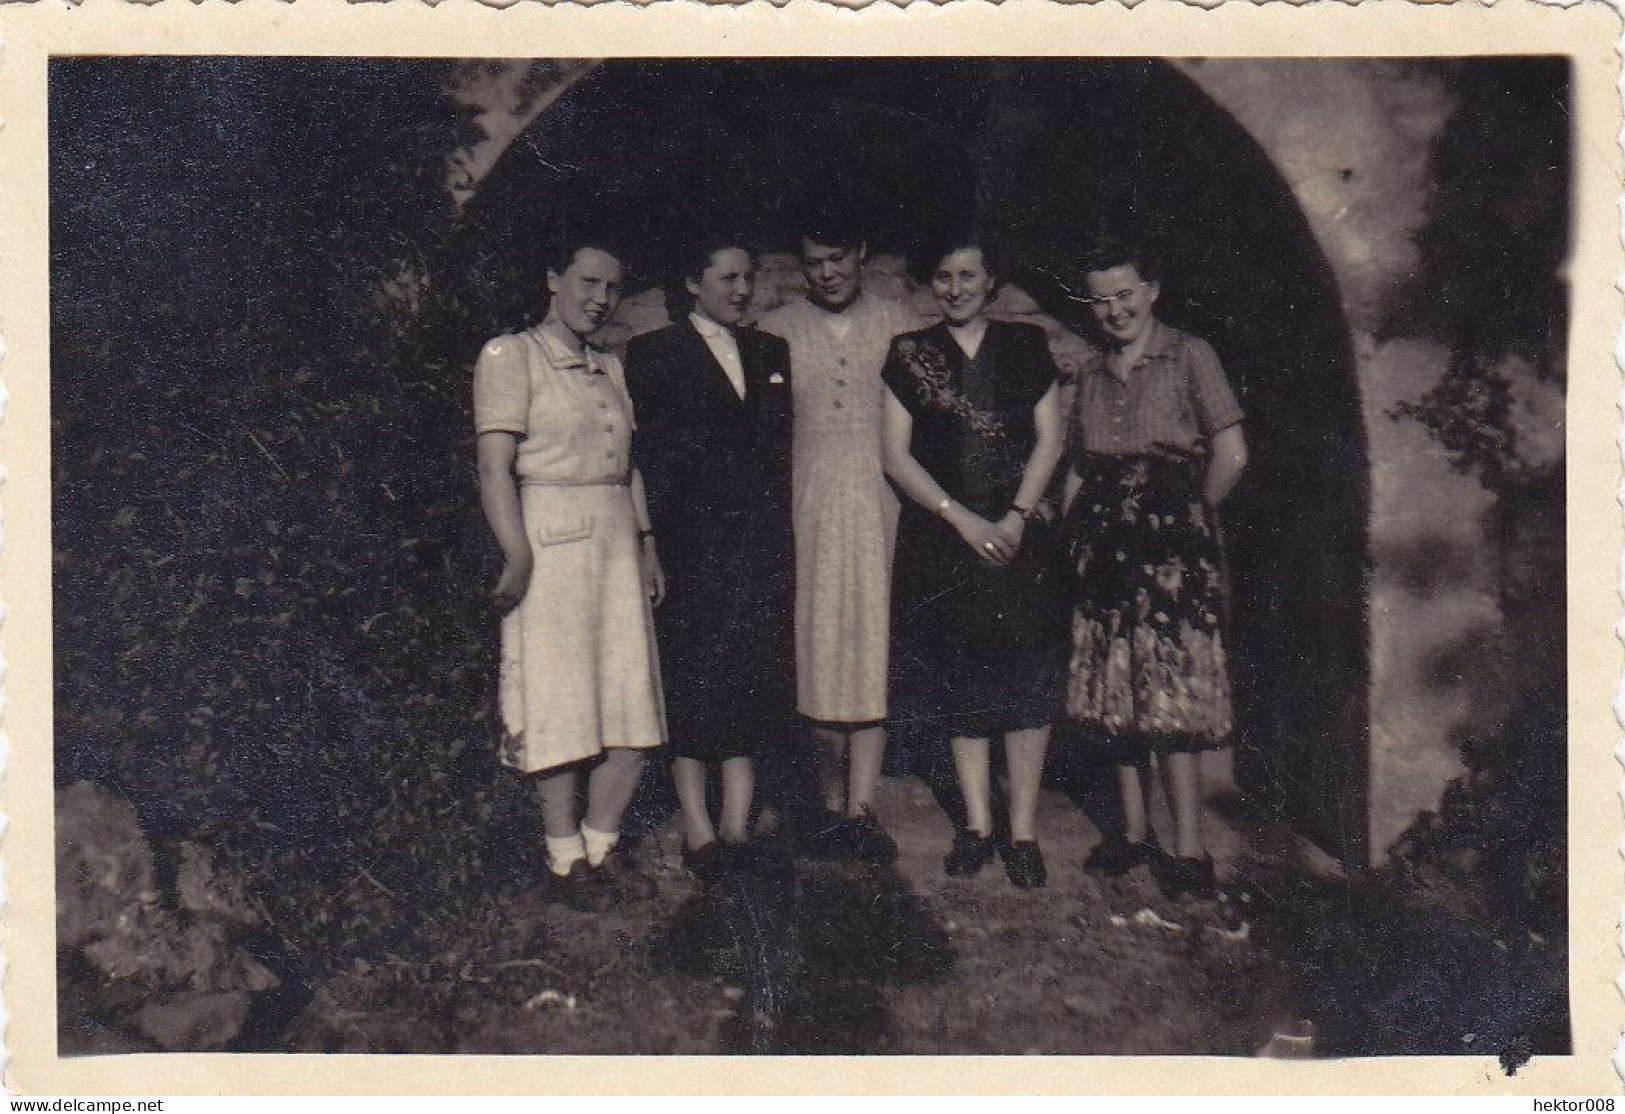 Altes Foto Vintage. Hübsche Junge Mädchen. Um 1950 (  B14  ) - Anonyme Personen